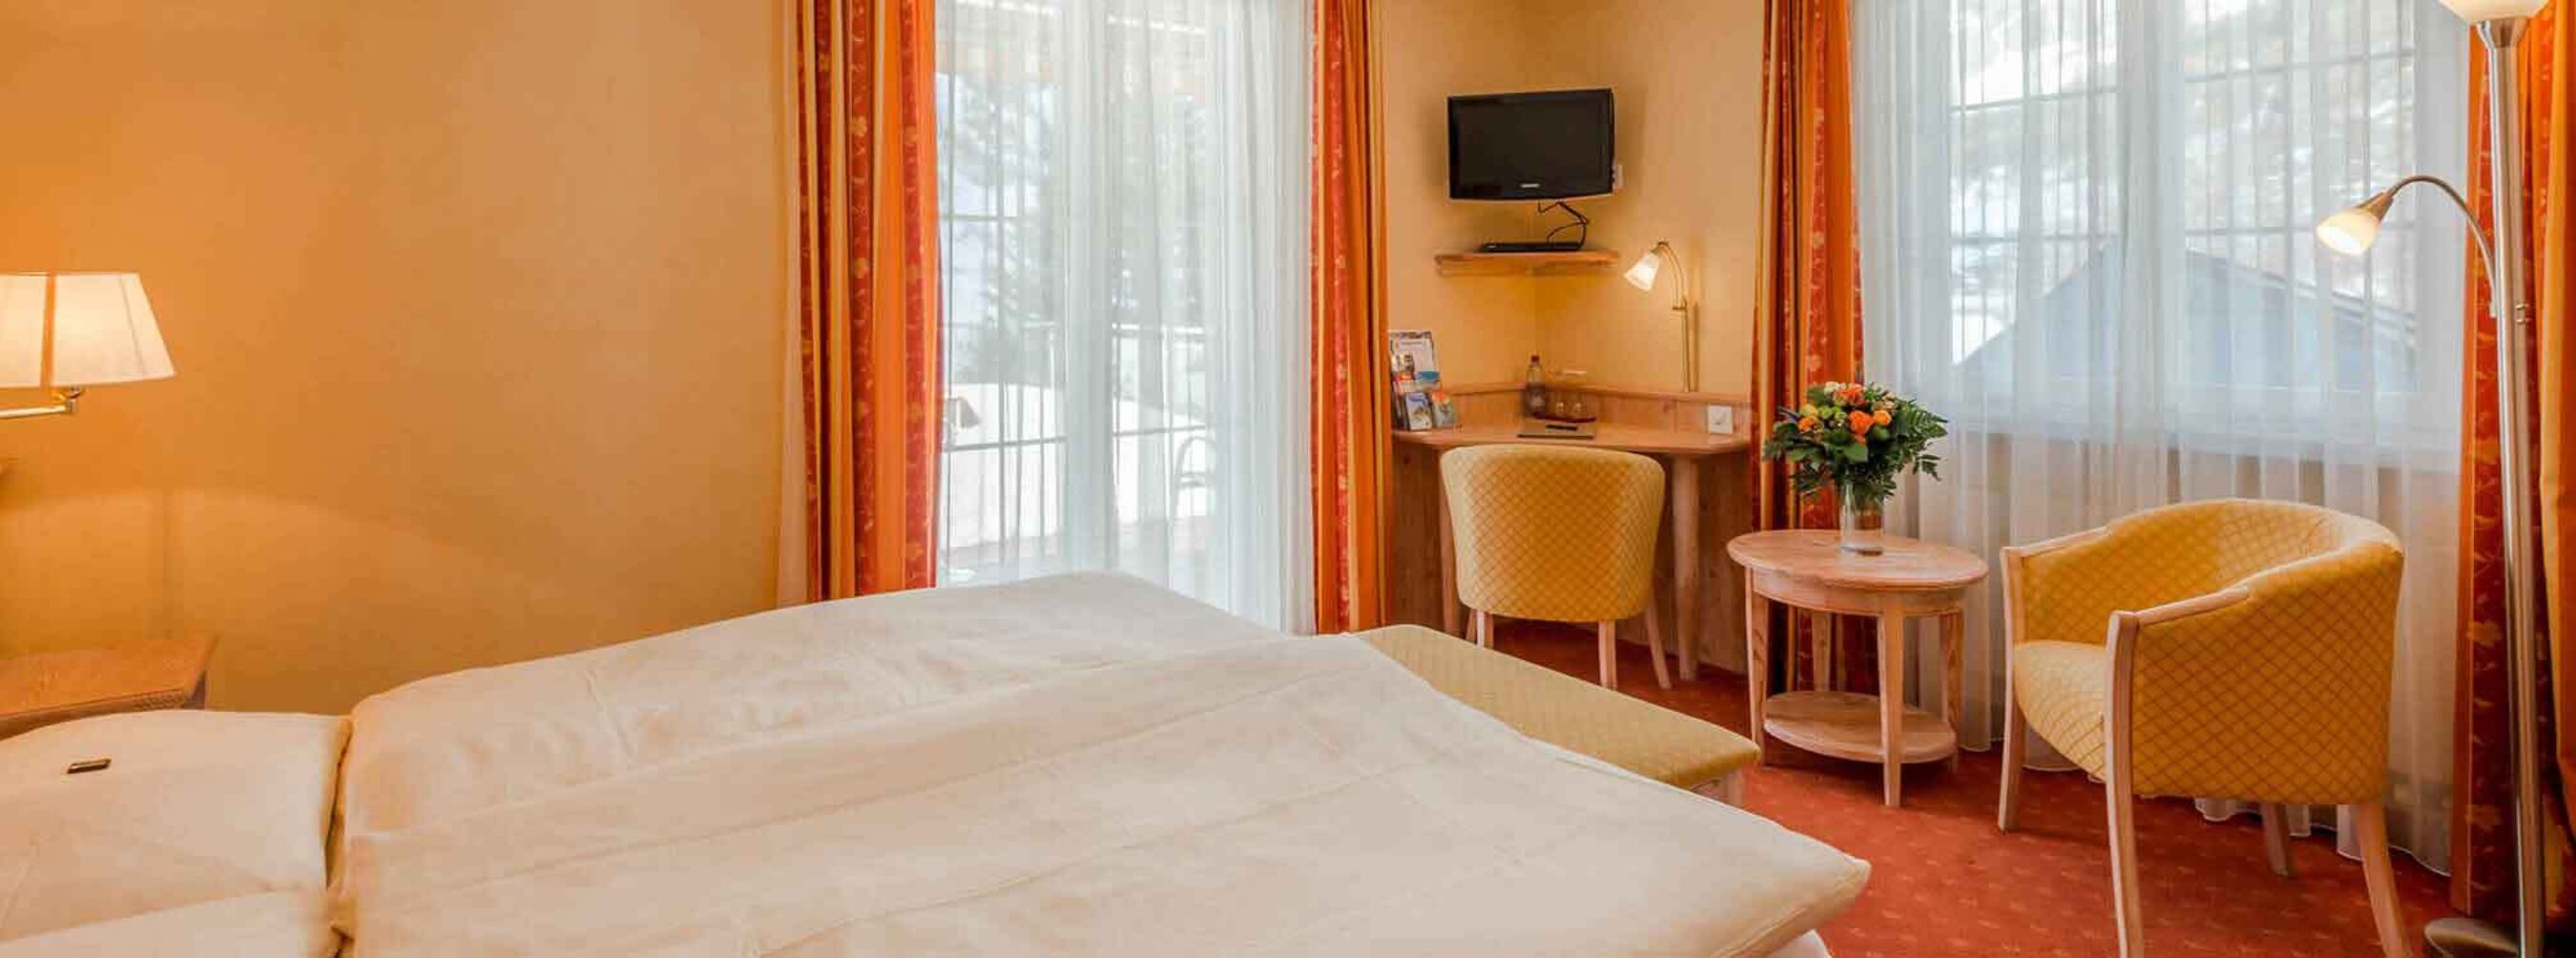 Gemuetliches Hotelzimmer in den Bergen im Hotel Waldhaus in Leukerbad Wallis